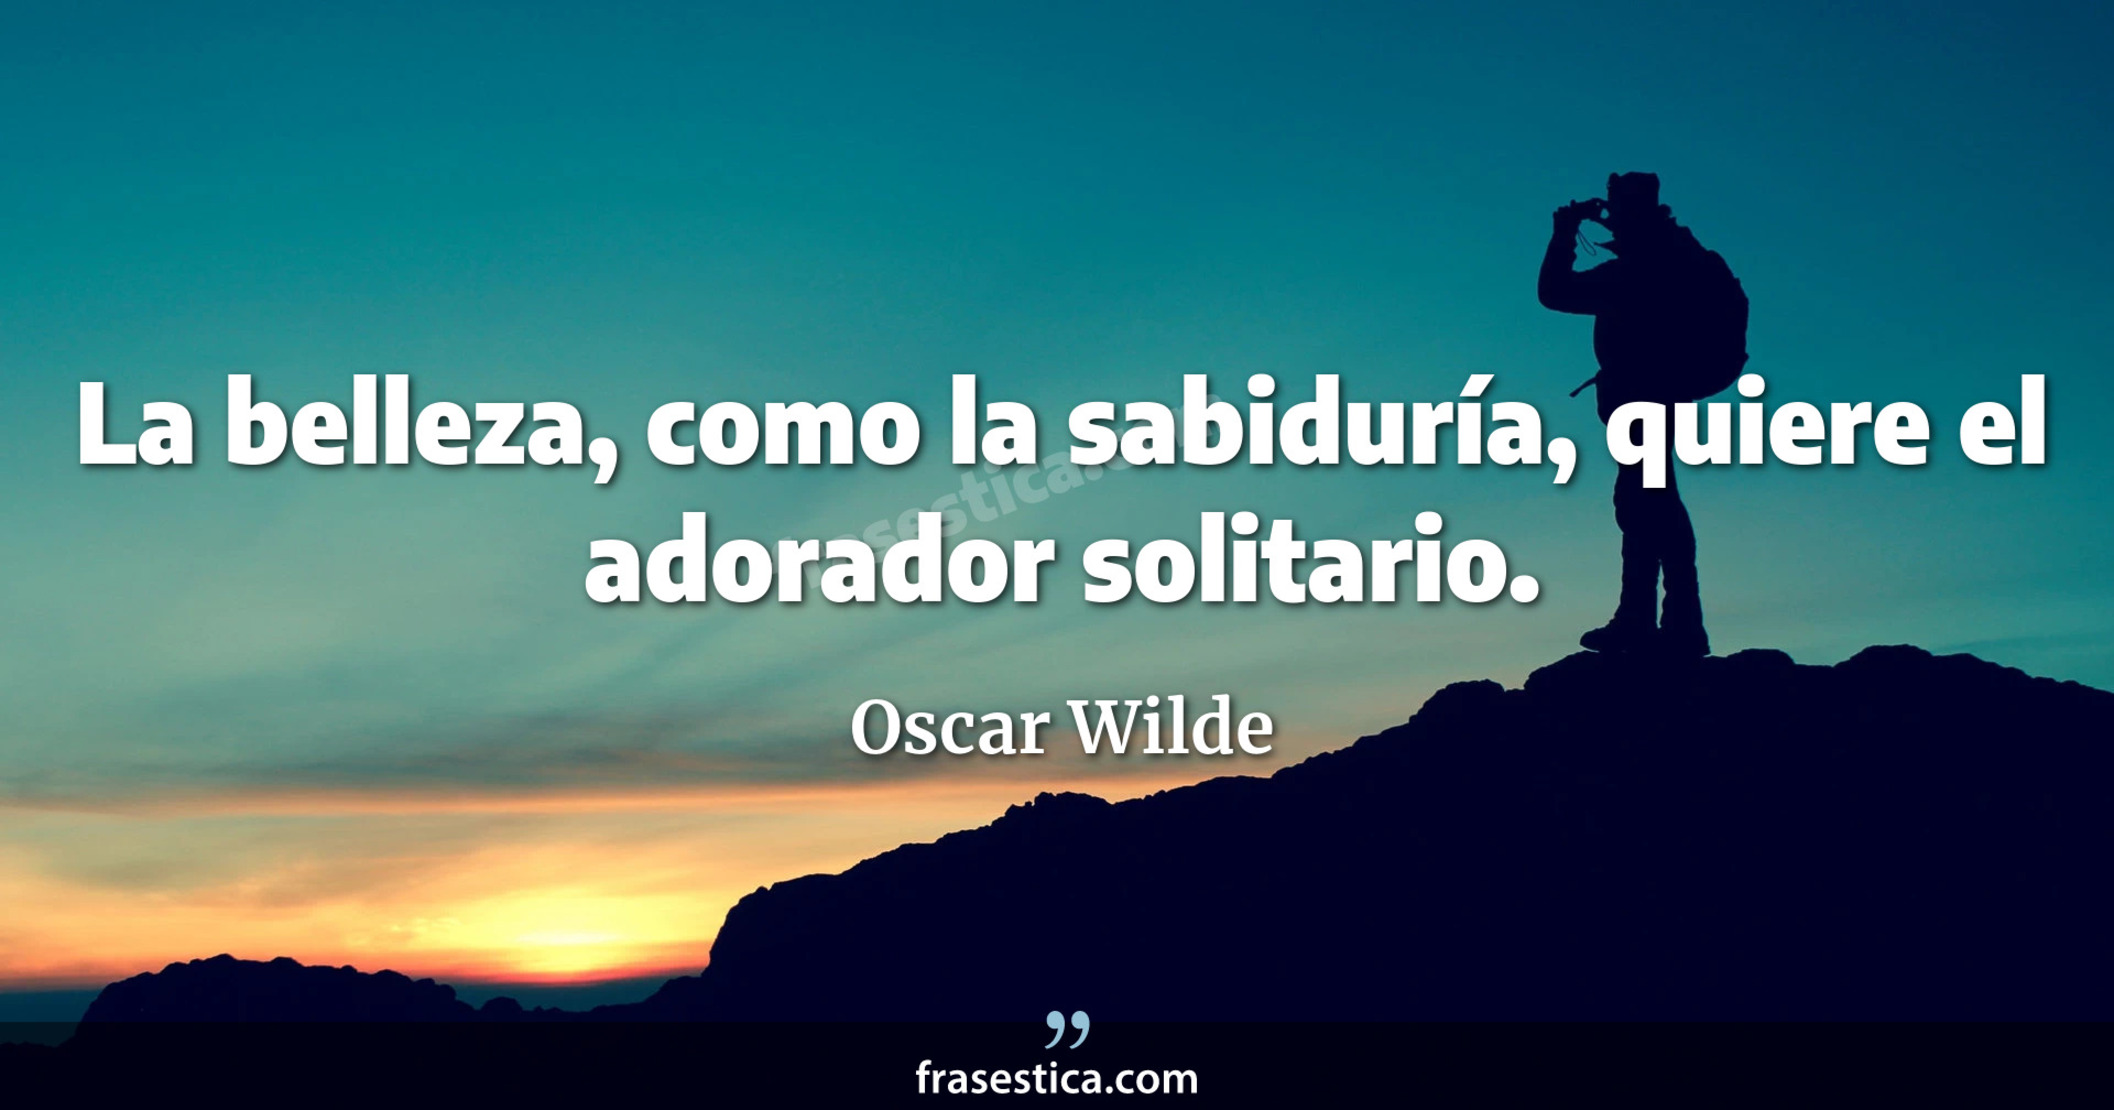 La belleza, como la sabiduría, quiere el adorador solitario. - Oscar Wilde